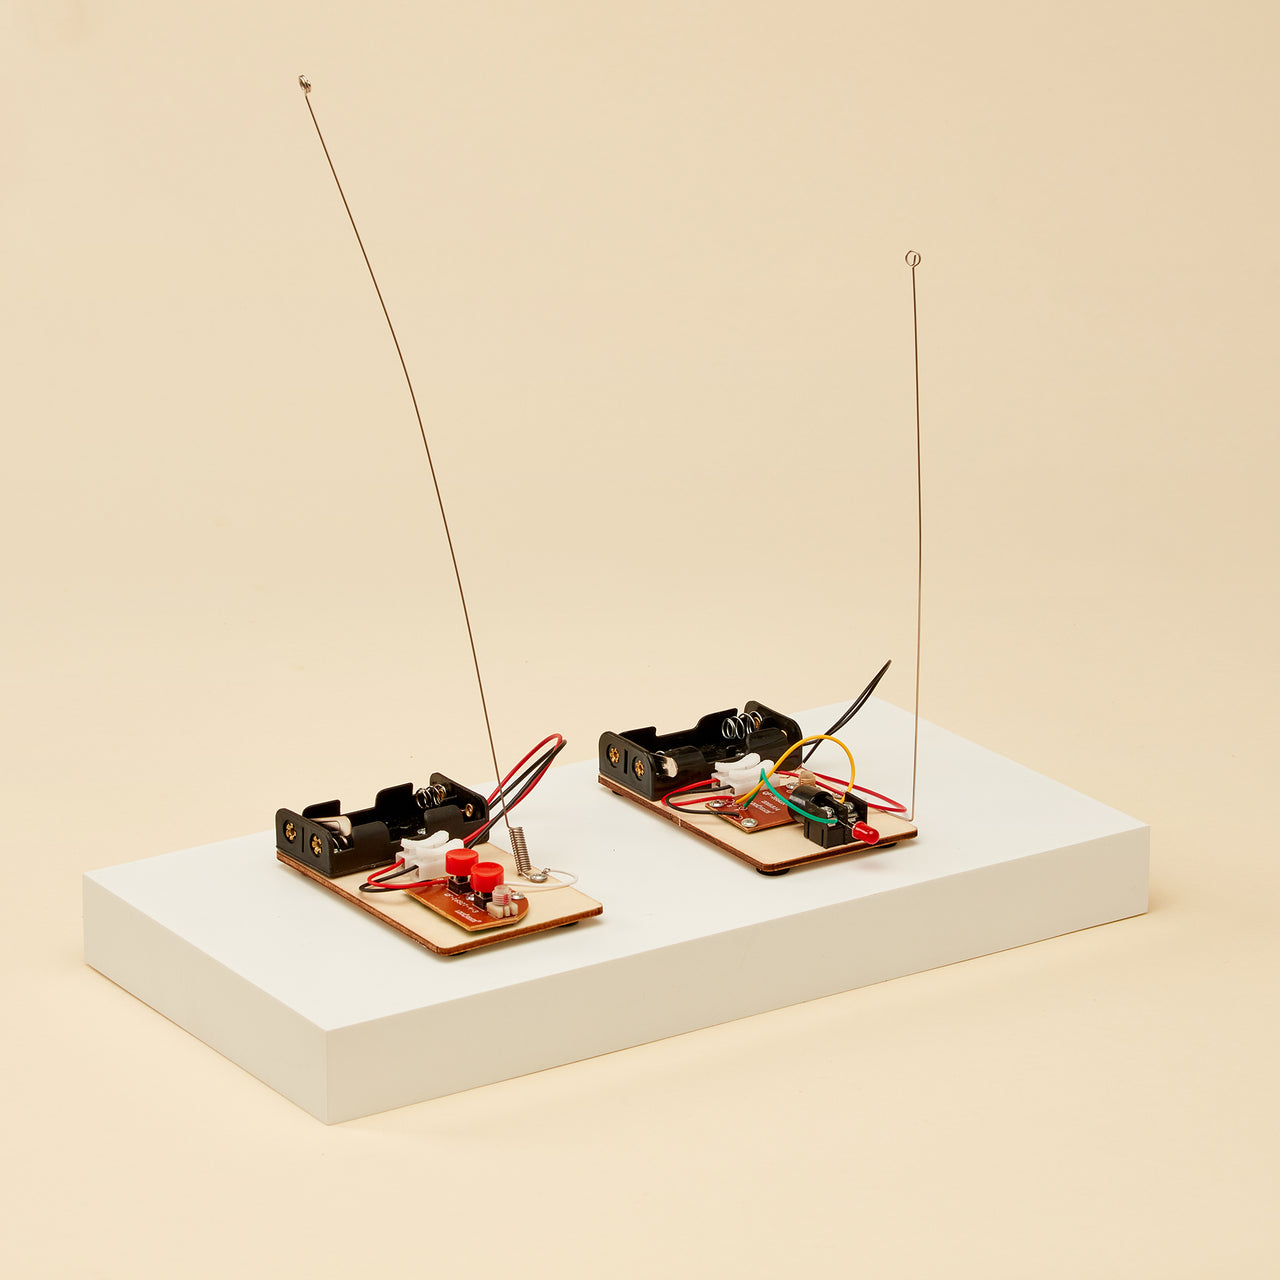 CreateKit Telegraph and Morse Code DIY Kit